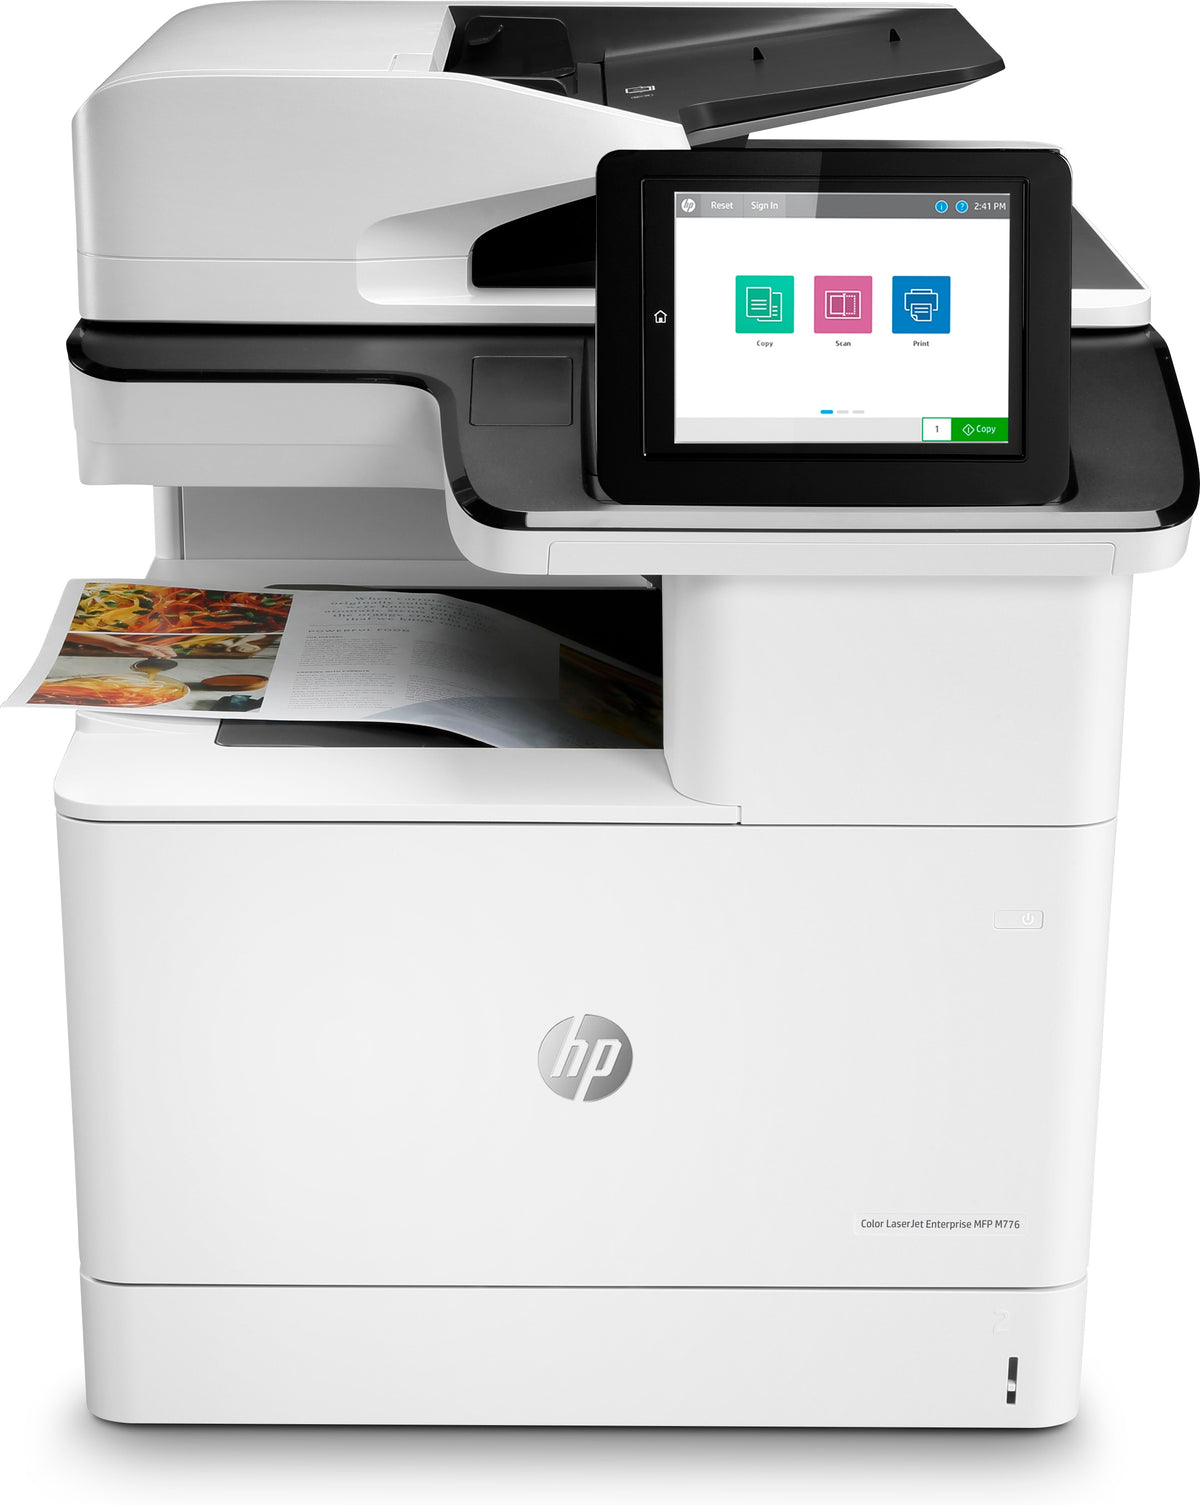 HP Color LaserJet Enterprise MFP M776dn - Multifunction printer - color - laser - 297 x 864 mm (original) - A3 (media) - up to 46 ppm (copy) - up to 46 ppm (print) - 650 sheets - USB 2.0, Gigabit LAN, Wi-Fi(n), USB 2.0 host